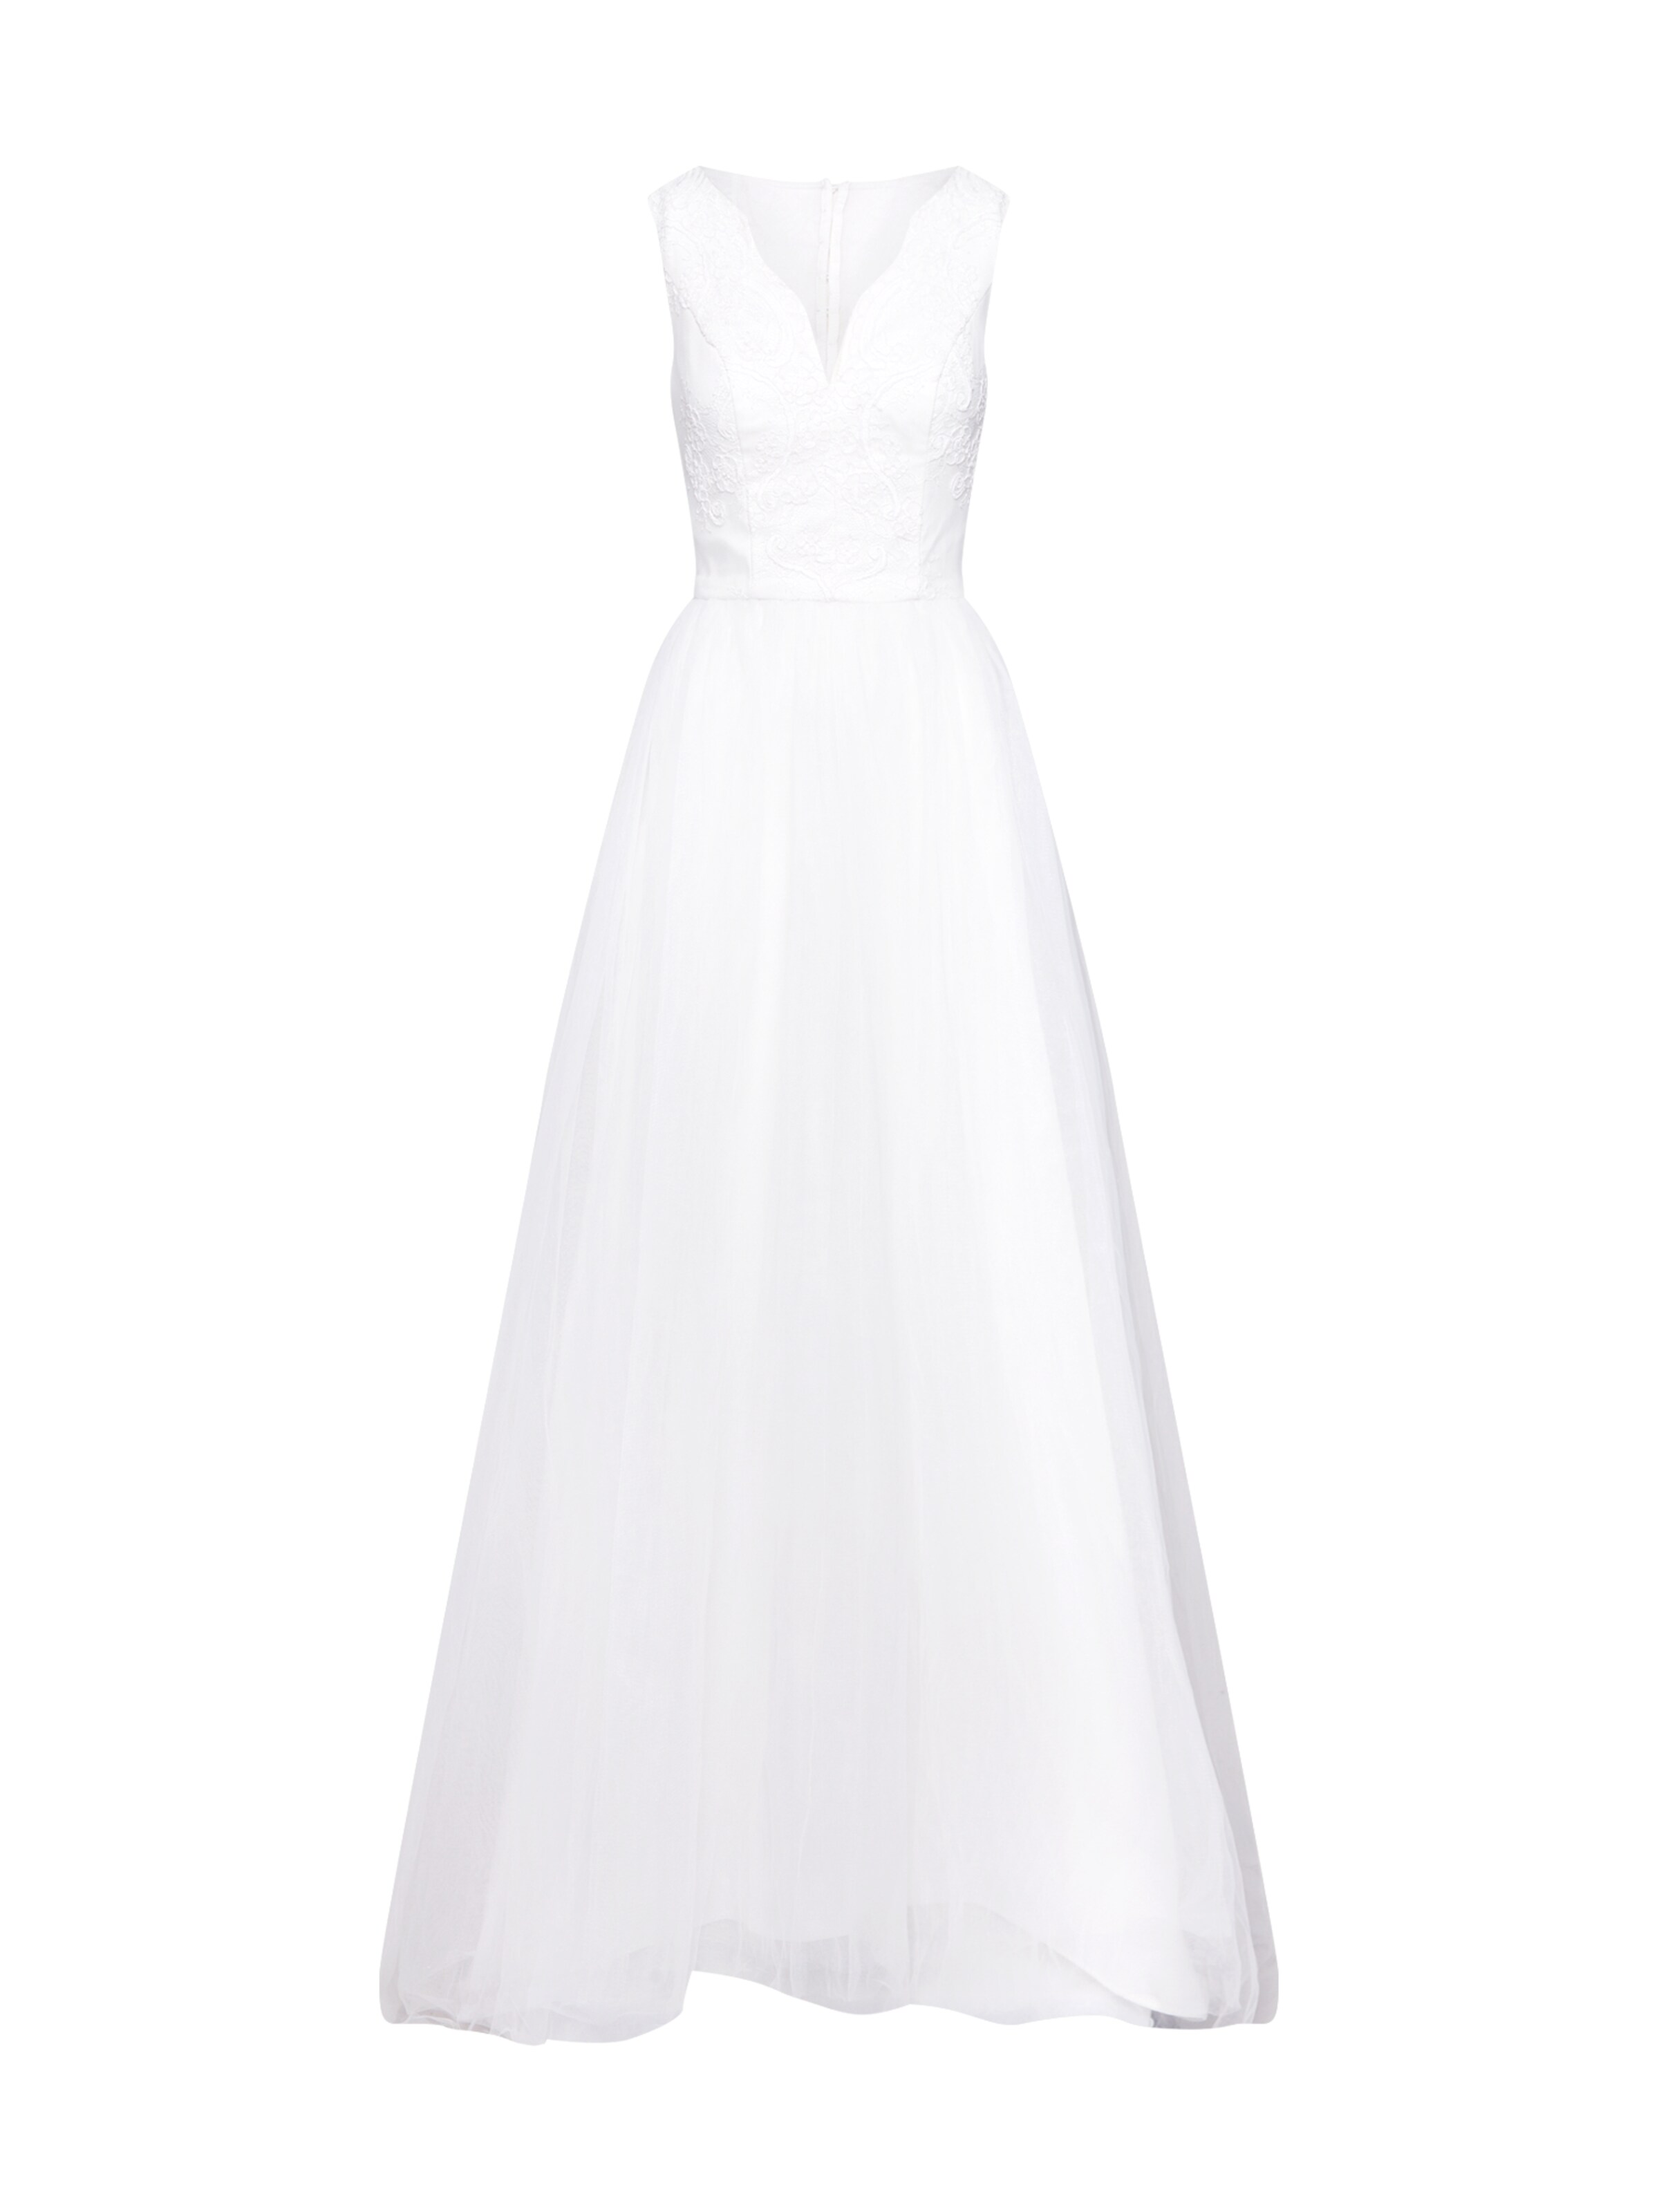 chi chi wedding šaty where can i buy d515b 3f20e